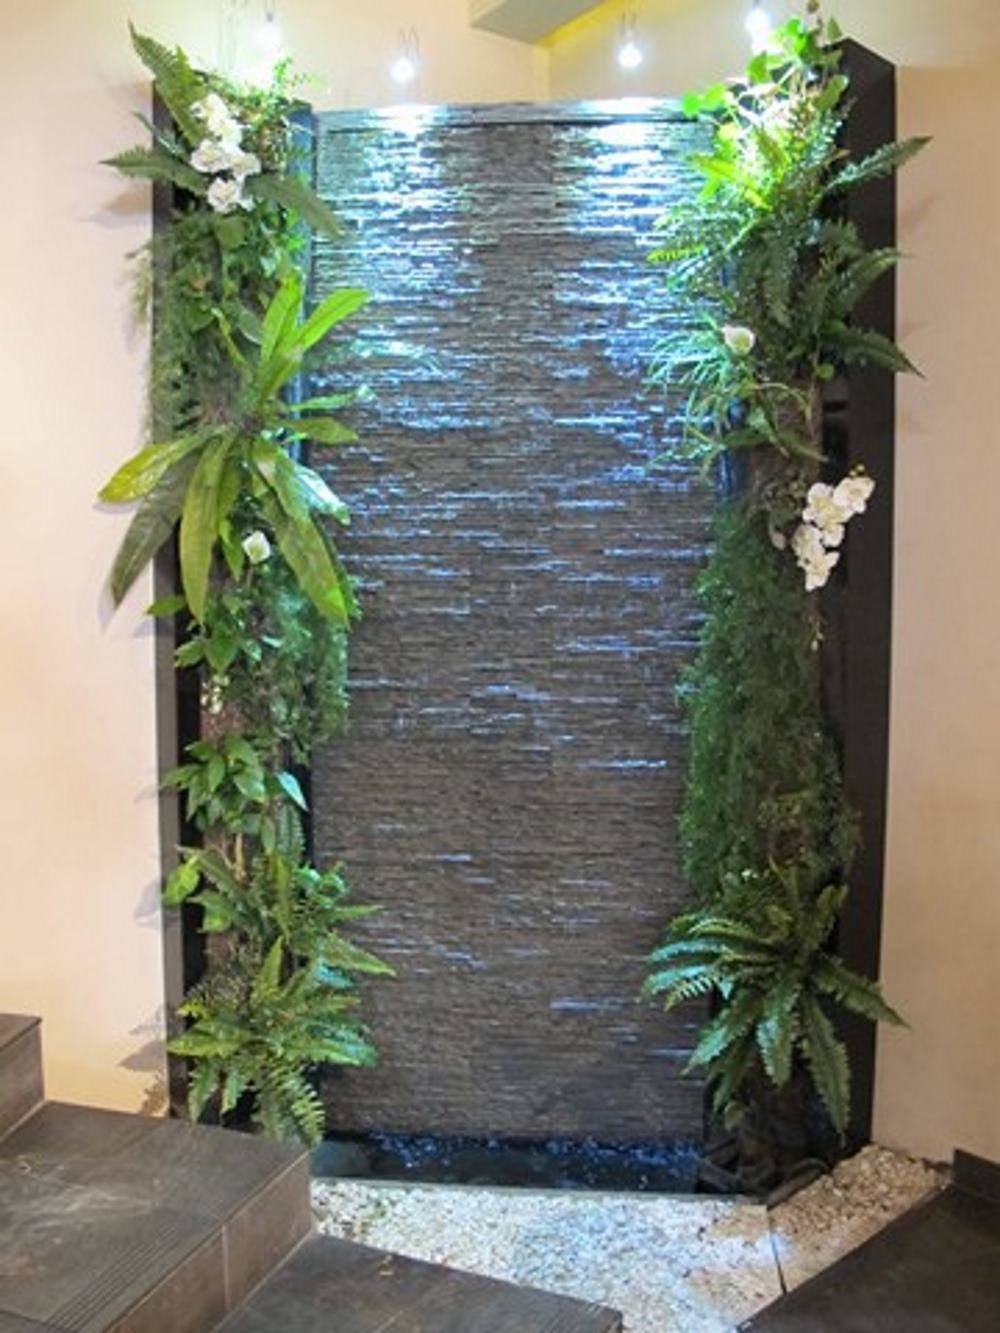 Création Mur de bulles, Mur d'eau, décoration aquatique et végétalisée